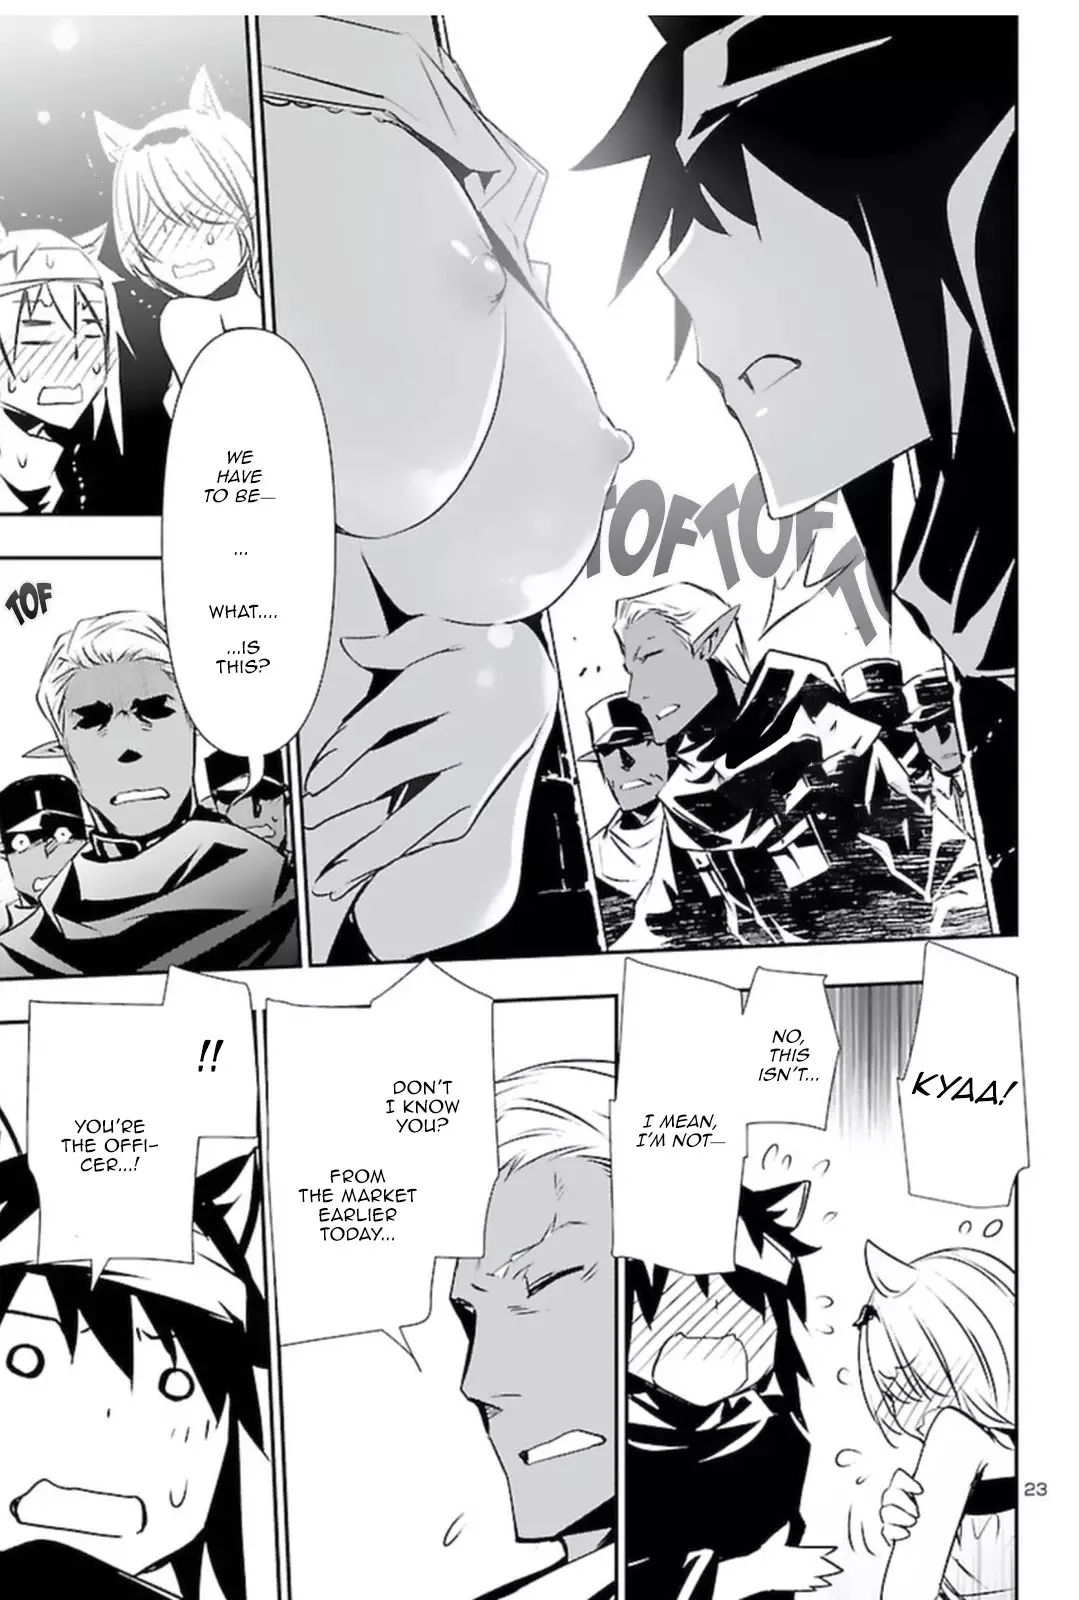 Shinju no Nectar - 56 page 22